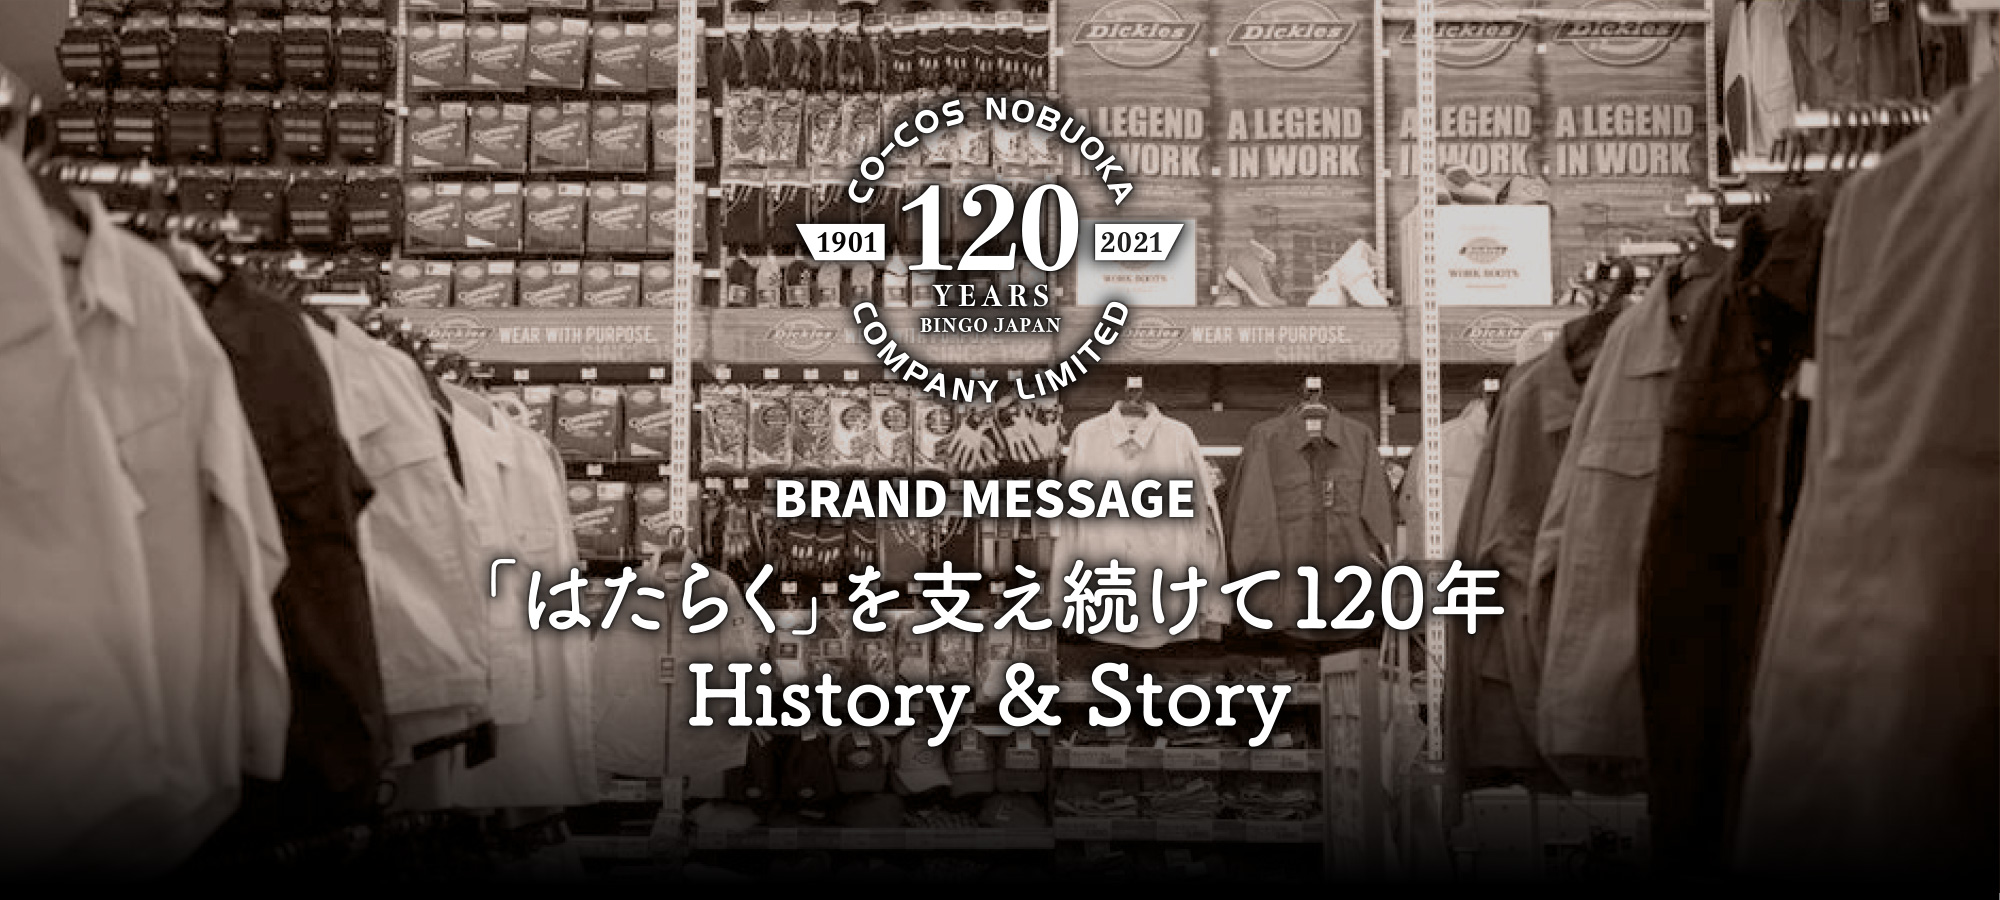 BRAND MESSAGE 「はたらく」を支え続けて120年 History & Story